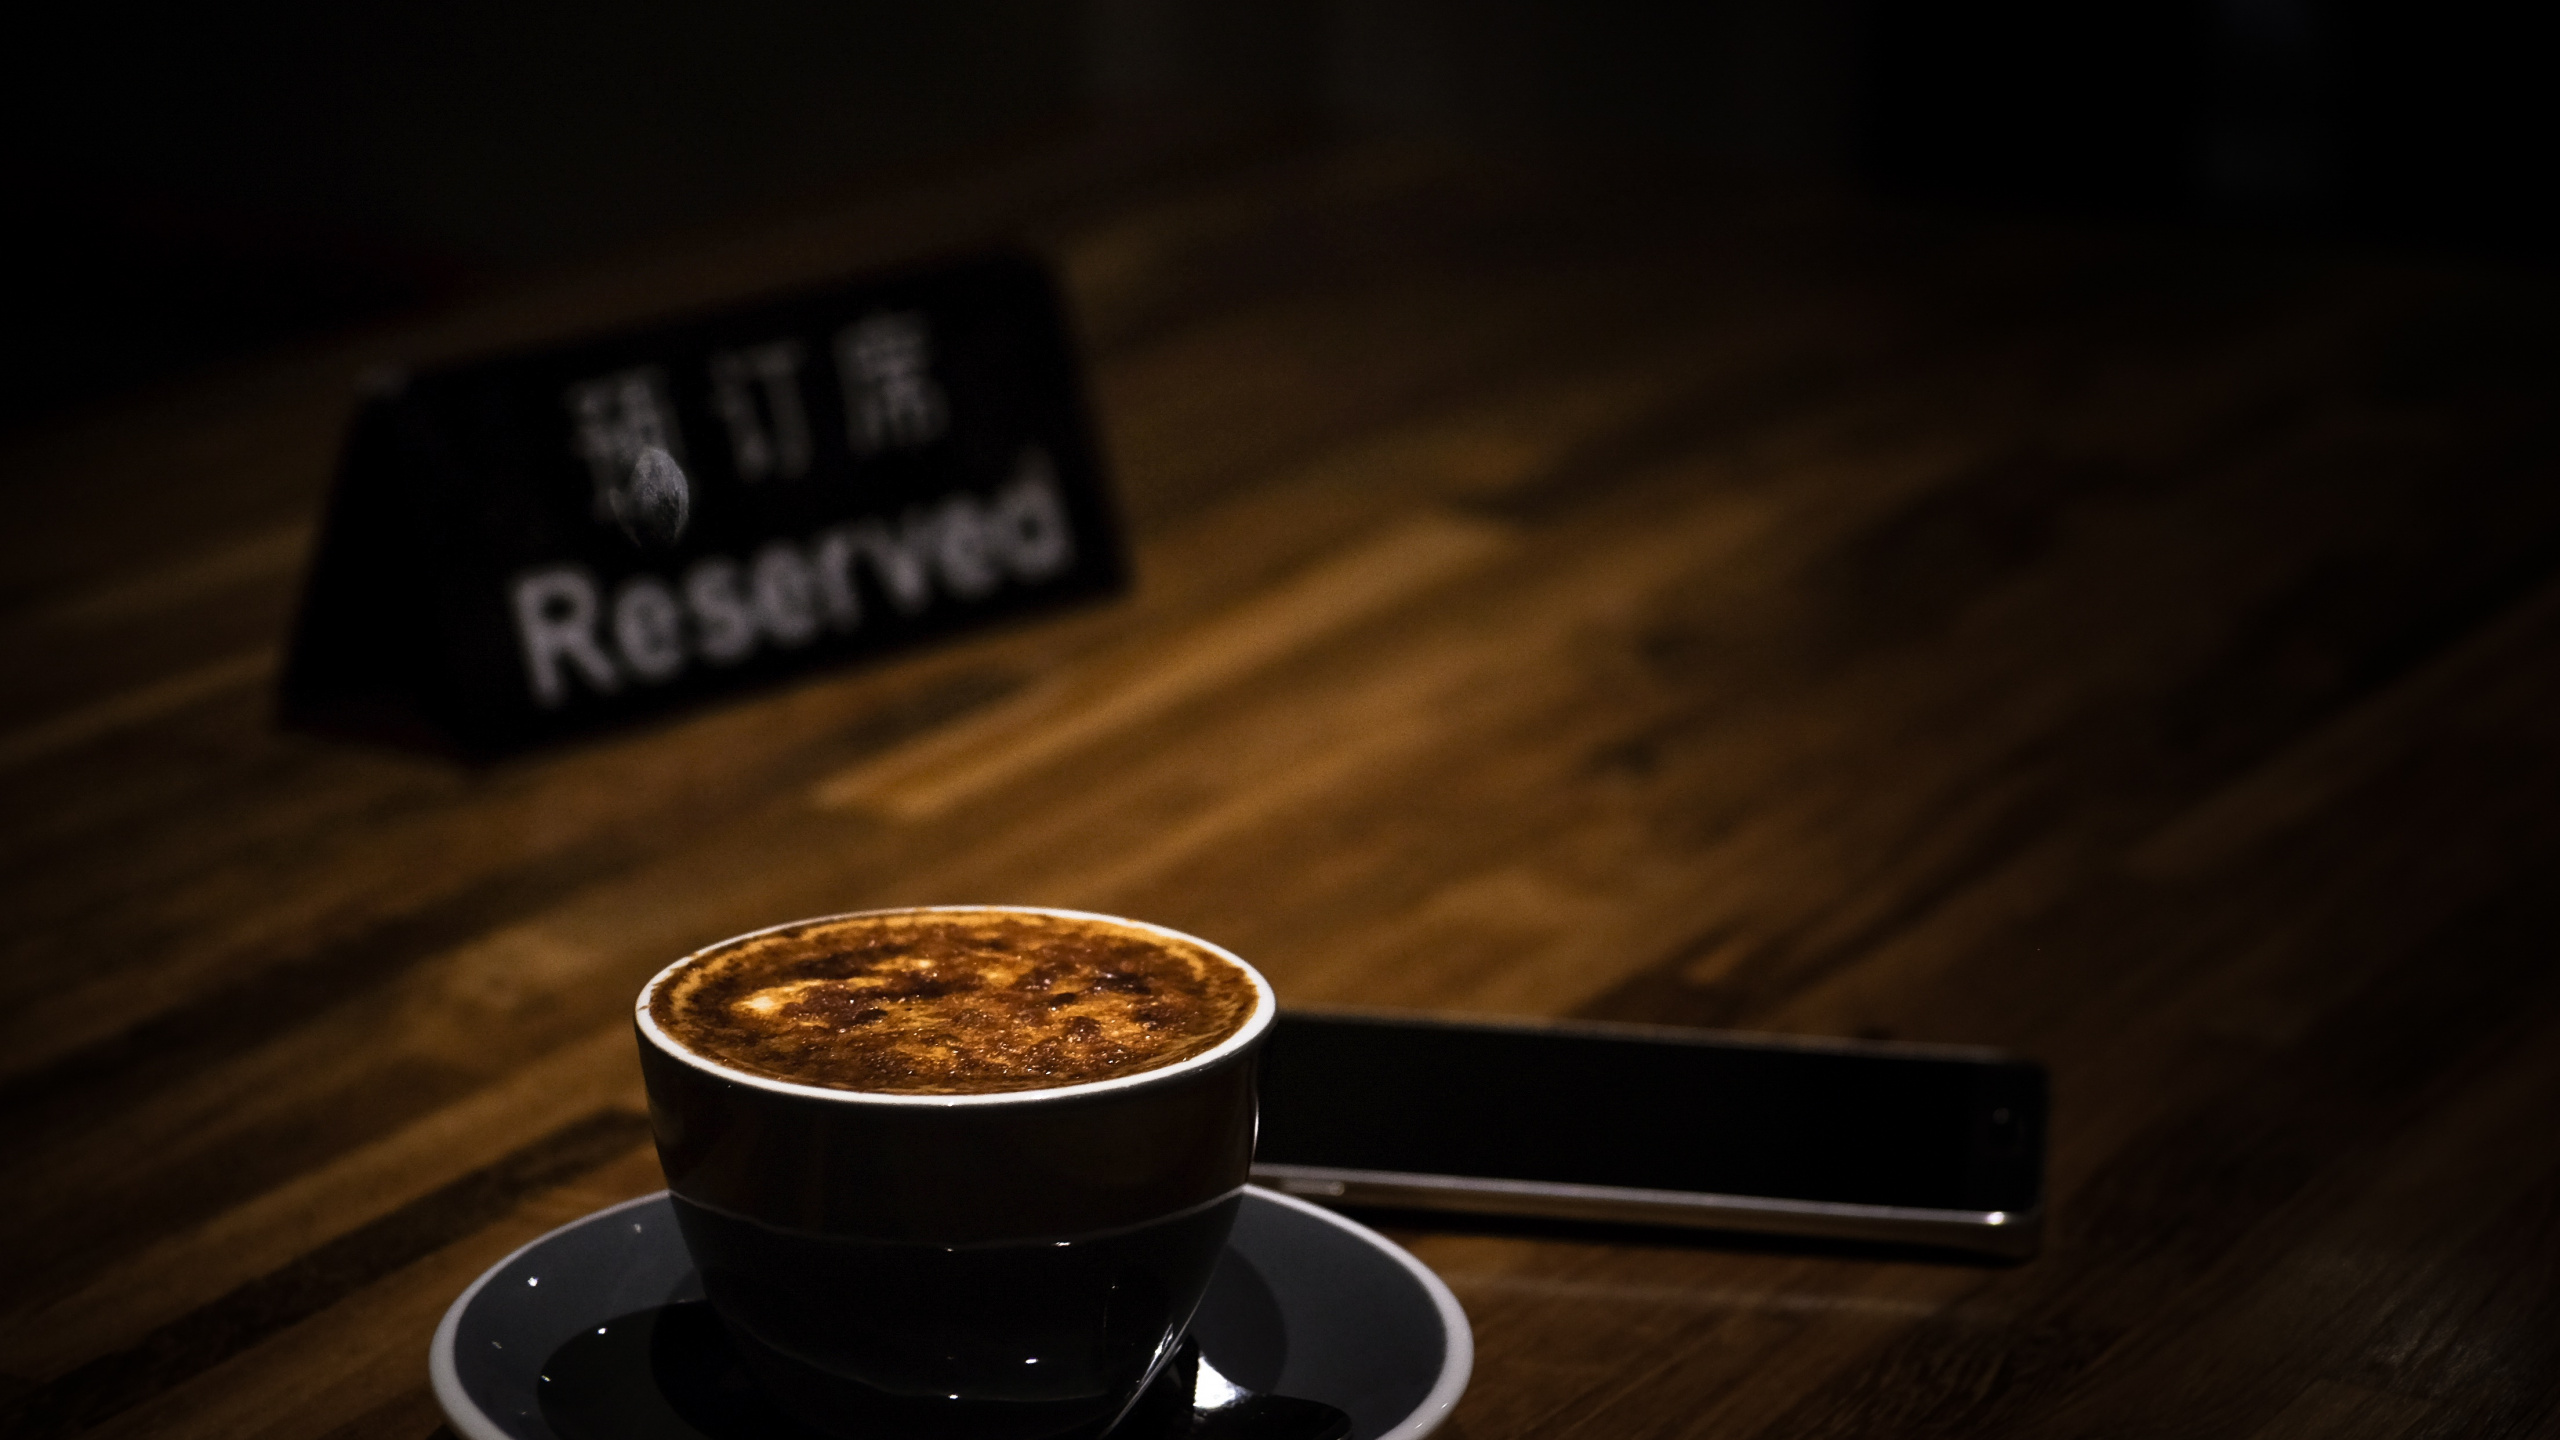 卡布奇诺咖啡, 拿铁咖啡, 浓缩咖啡, 咖啡馆, 咖啡杯 壁纸 2560x1440 允许